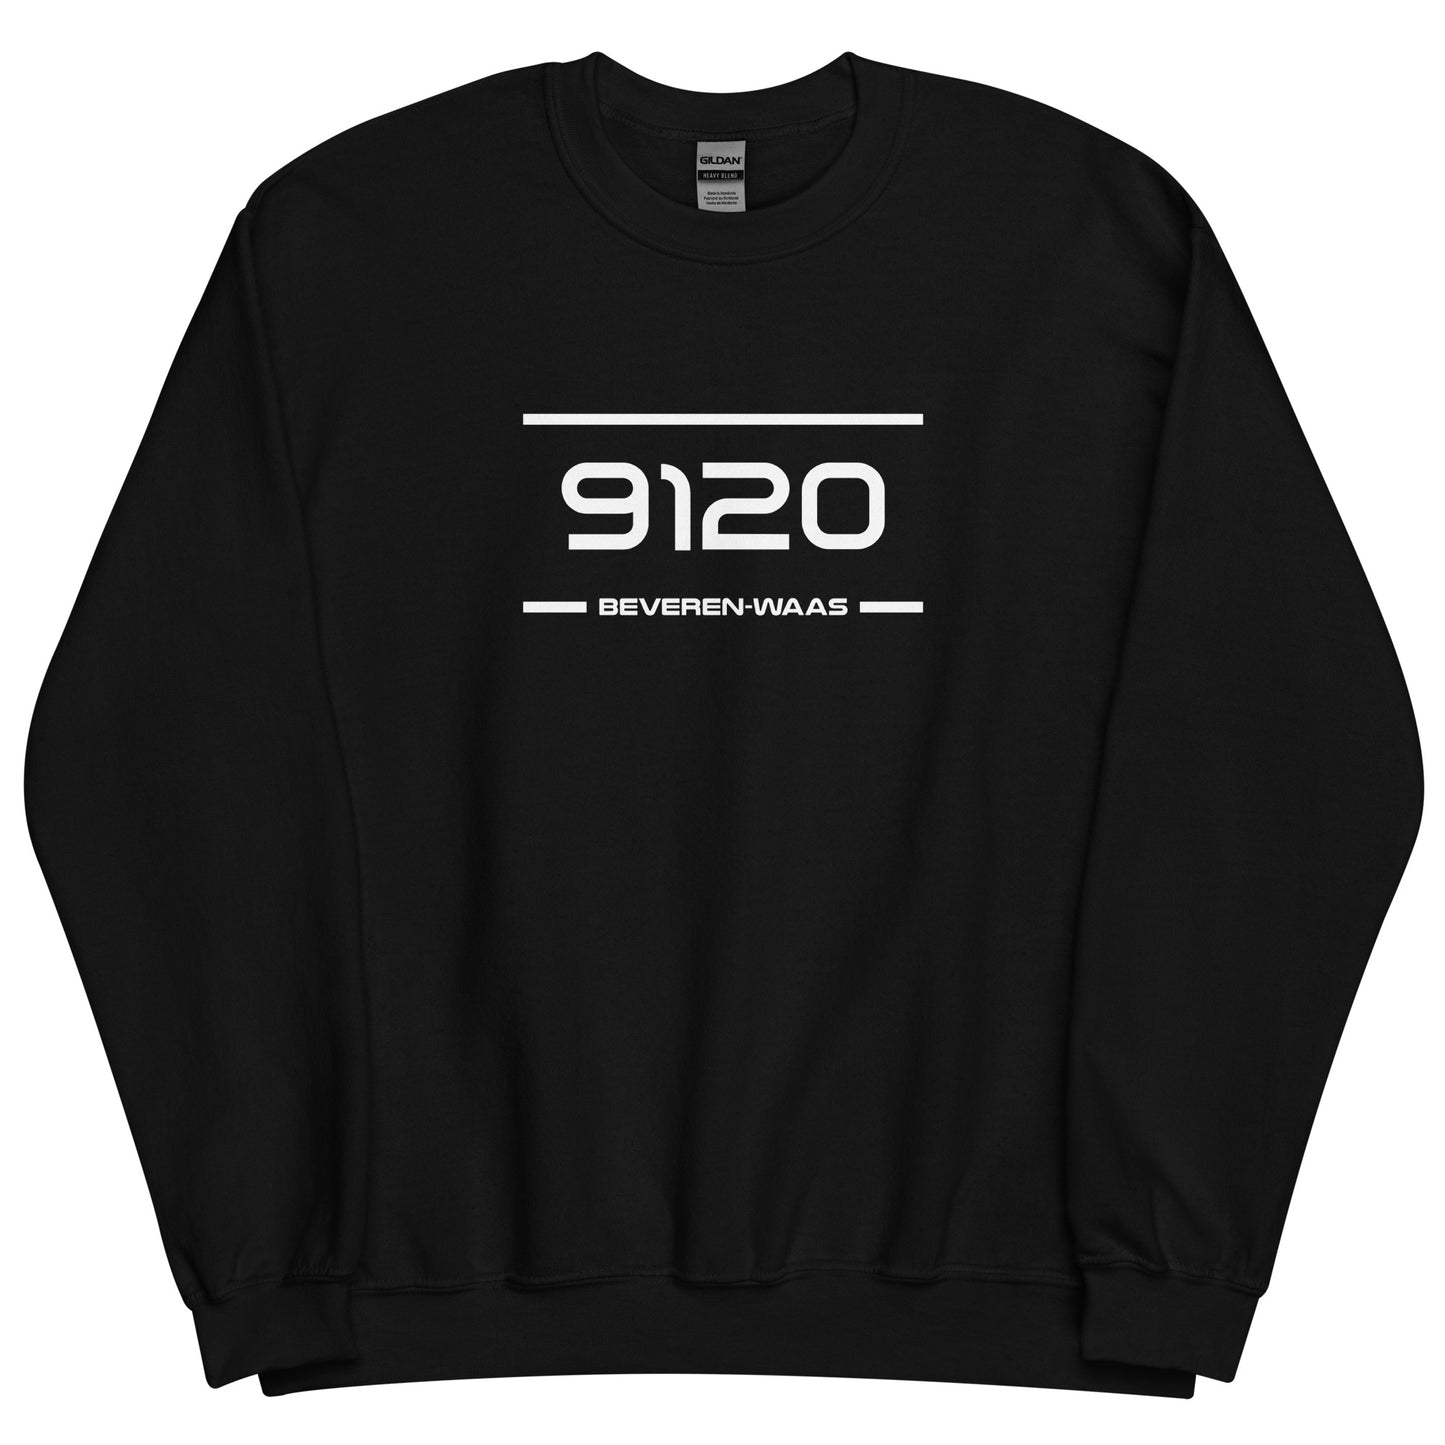 Sweater - 9120 - Beveren-Waas (M/V)